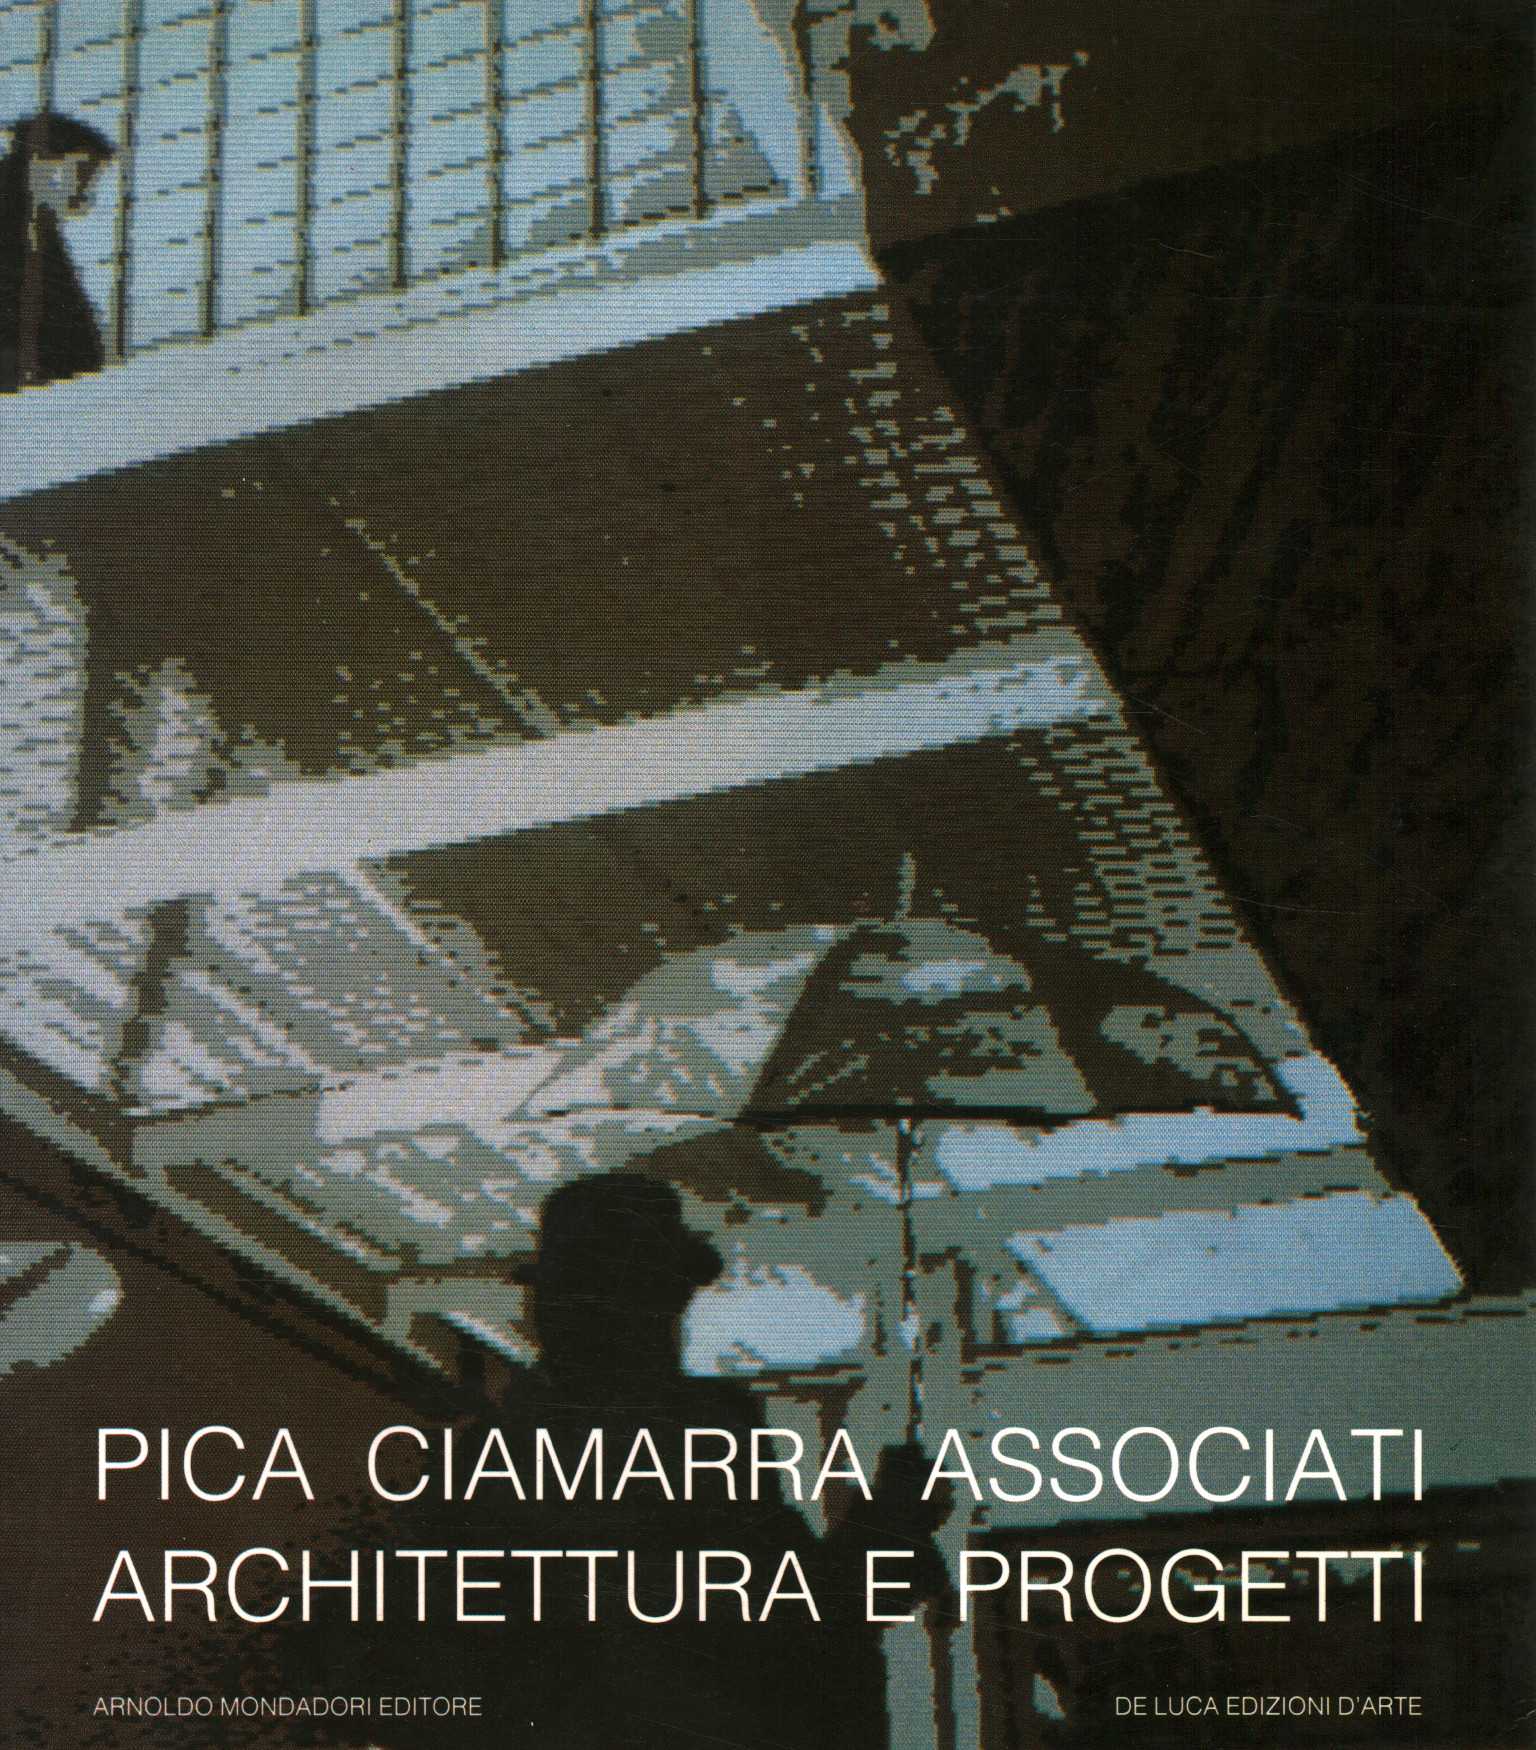 Pica Ciamarra Associates. Architecture and